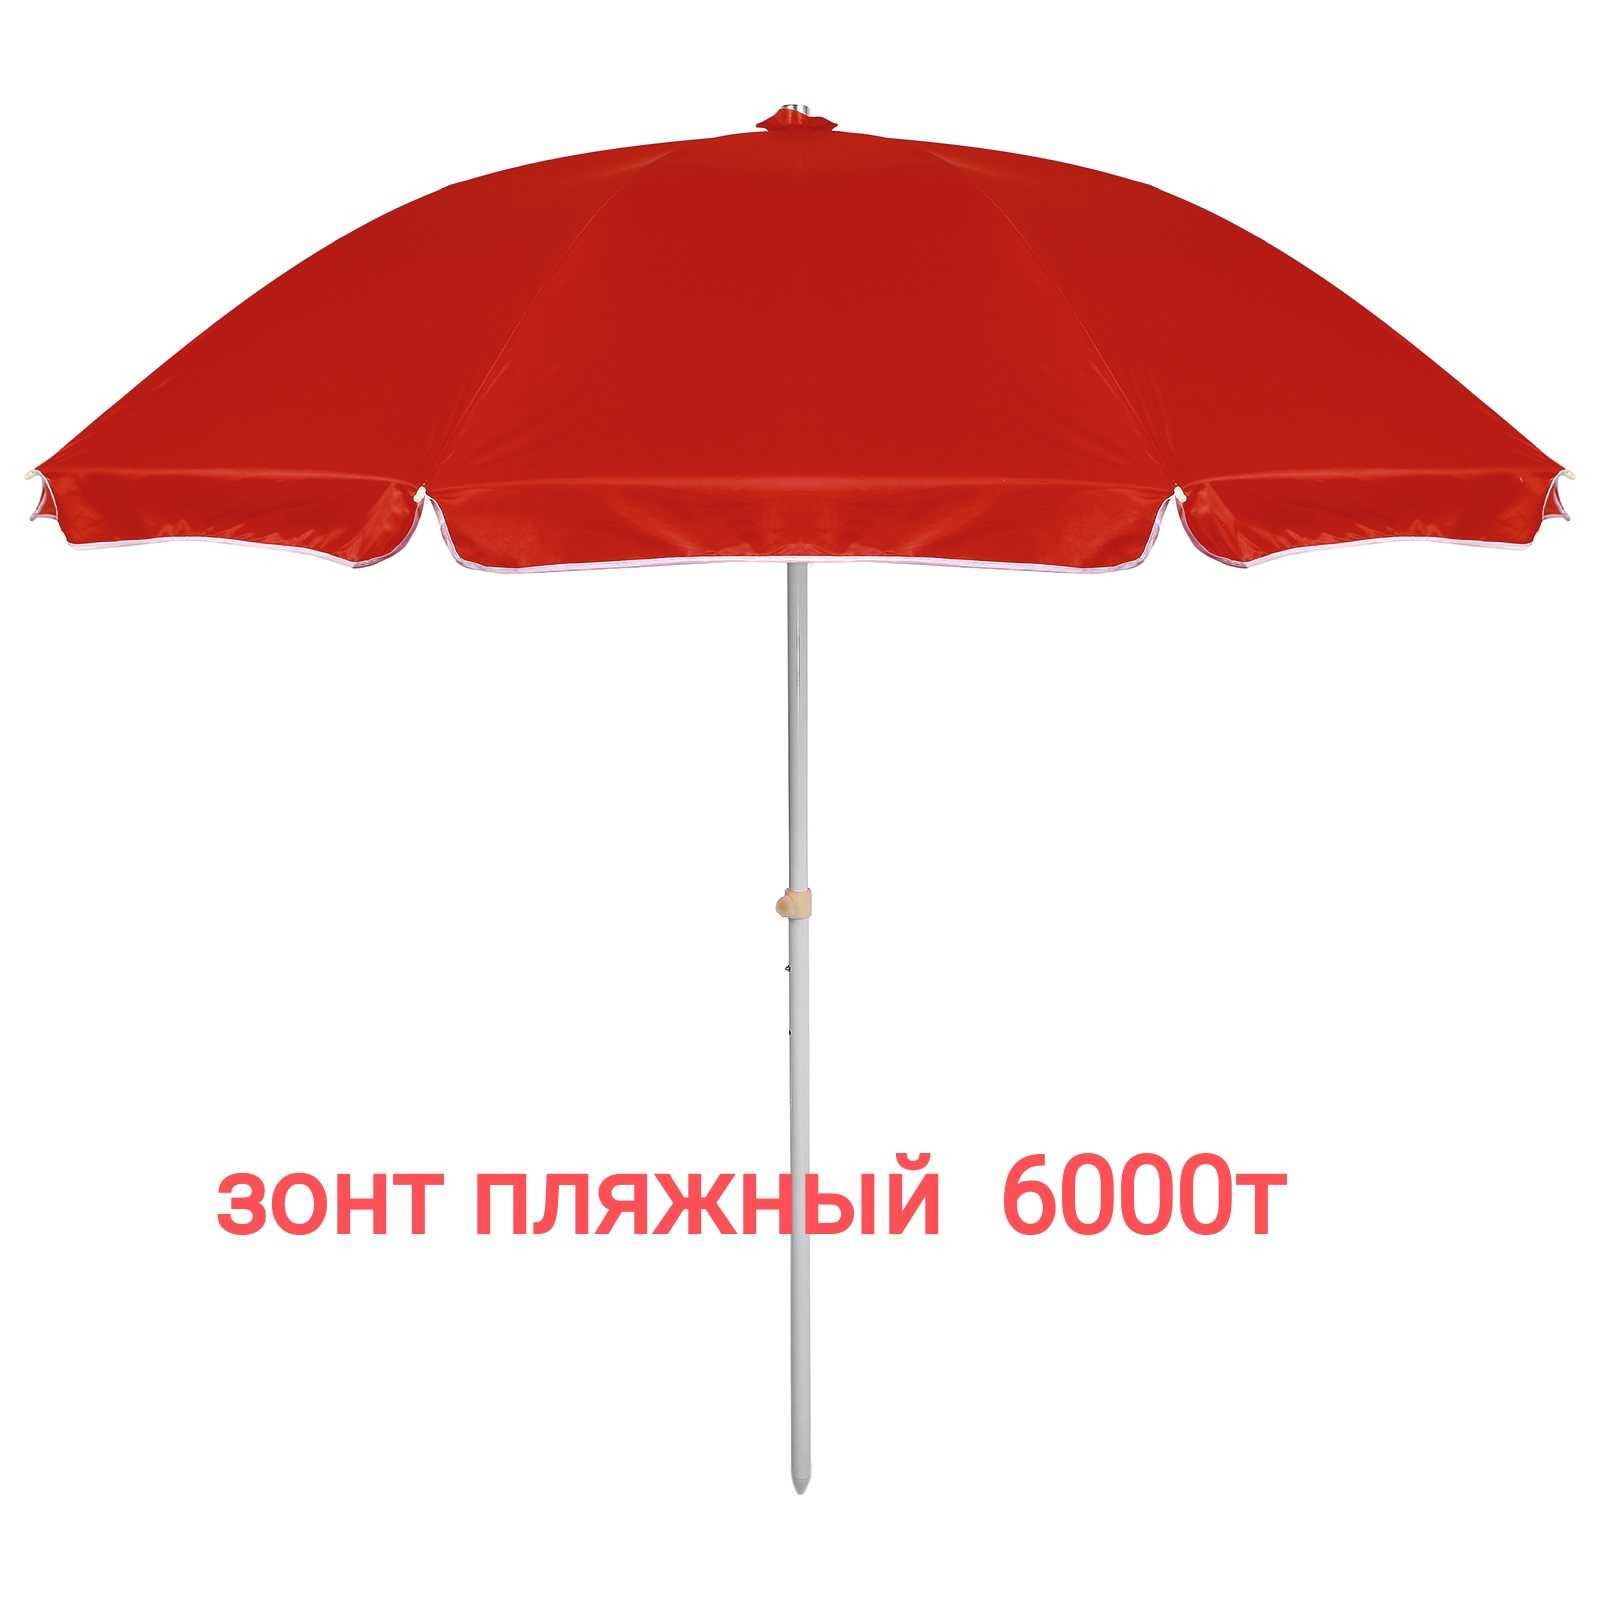 Шатры, палатки туристические, зонты пляжные